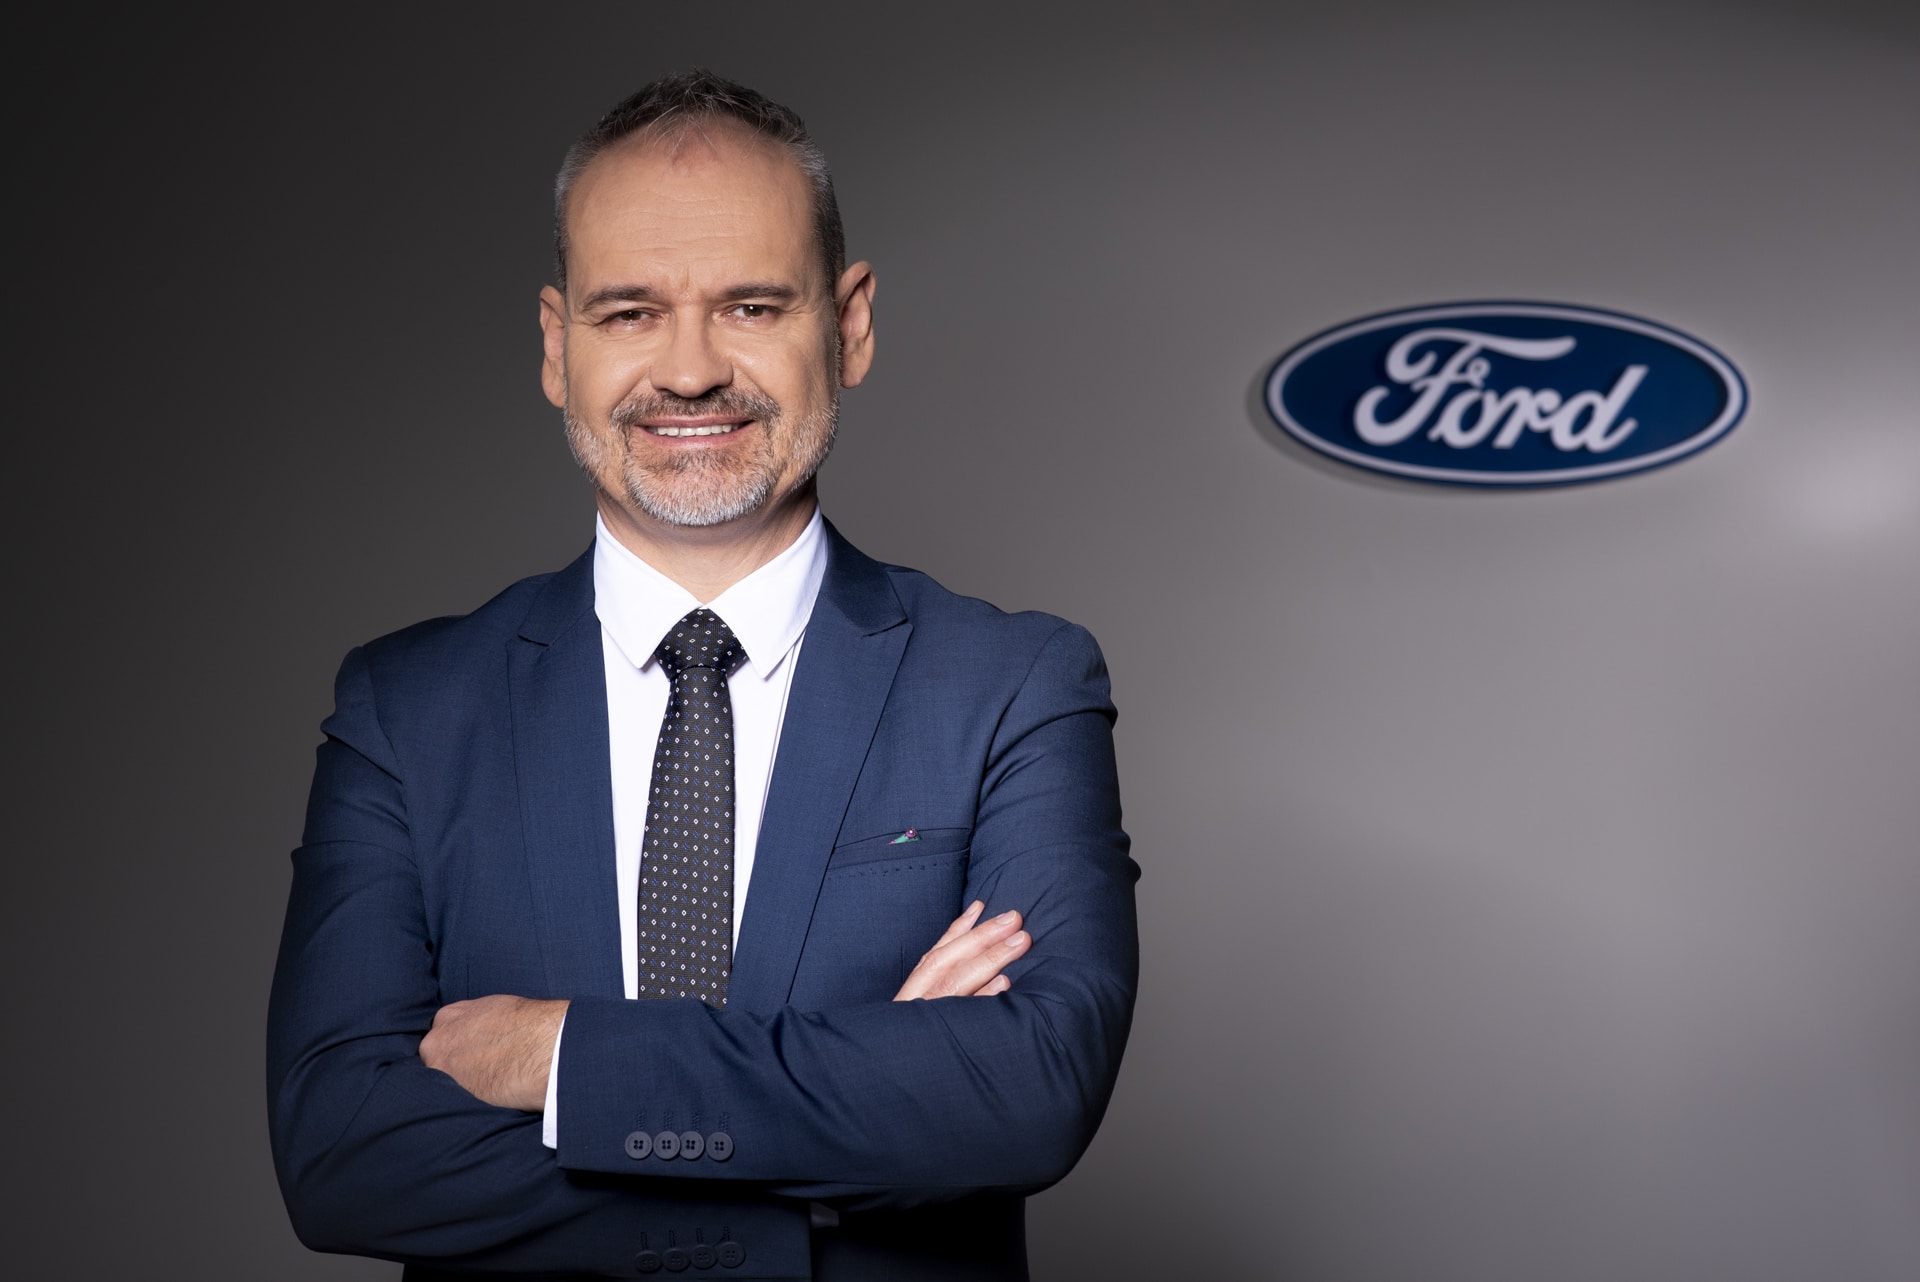 Attila Szabó, prezes i dyrektor zarządzający Ford Polska